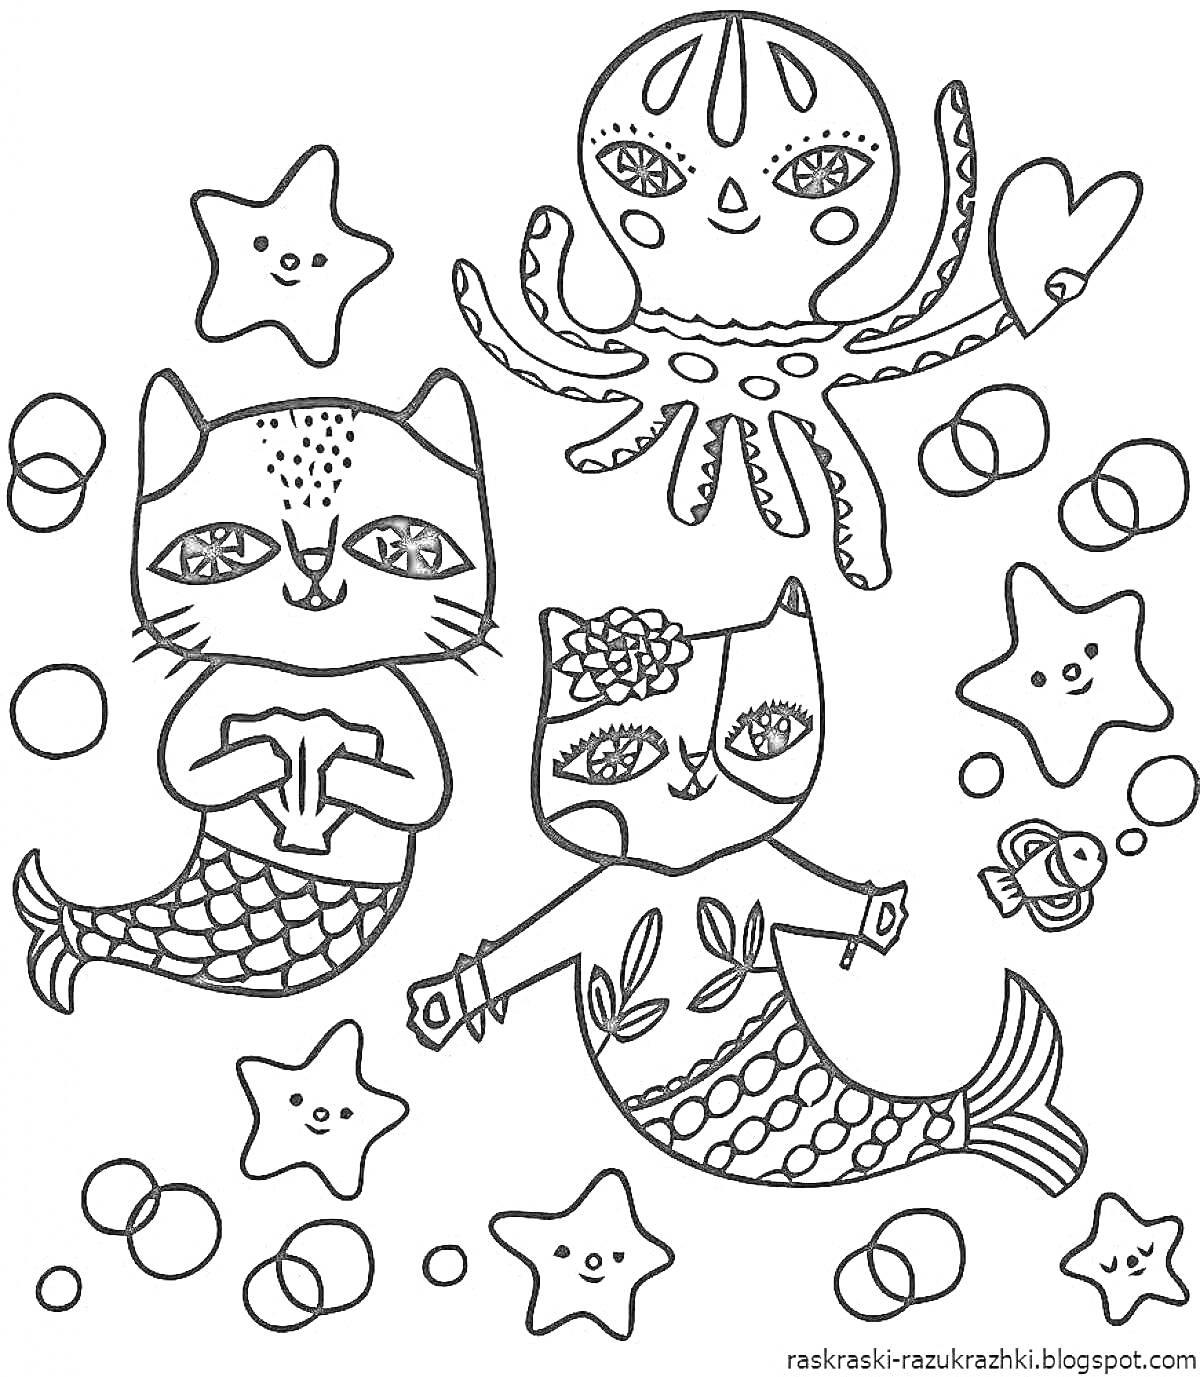 Раскраска Подводное королевство: русалки-котята, осьминог и звездочки